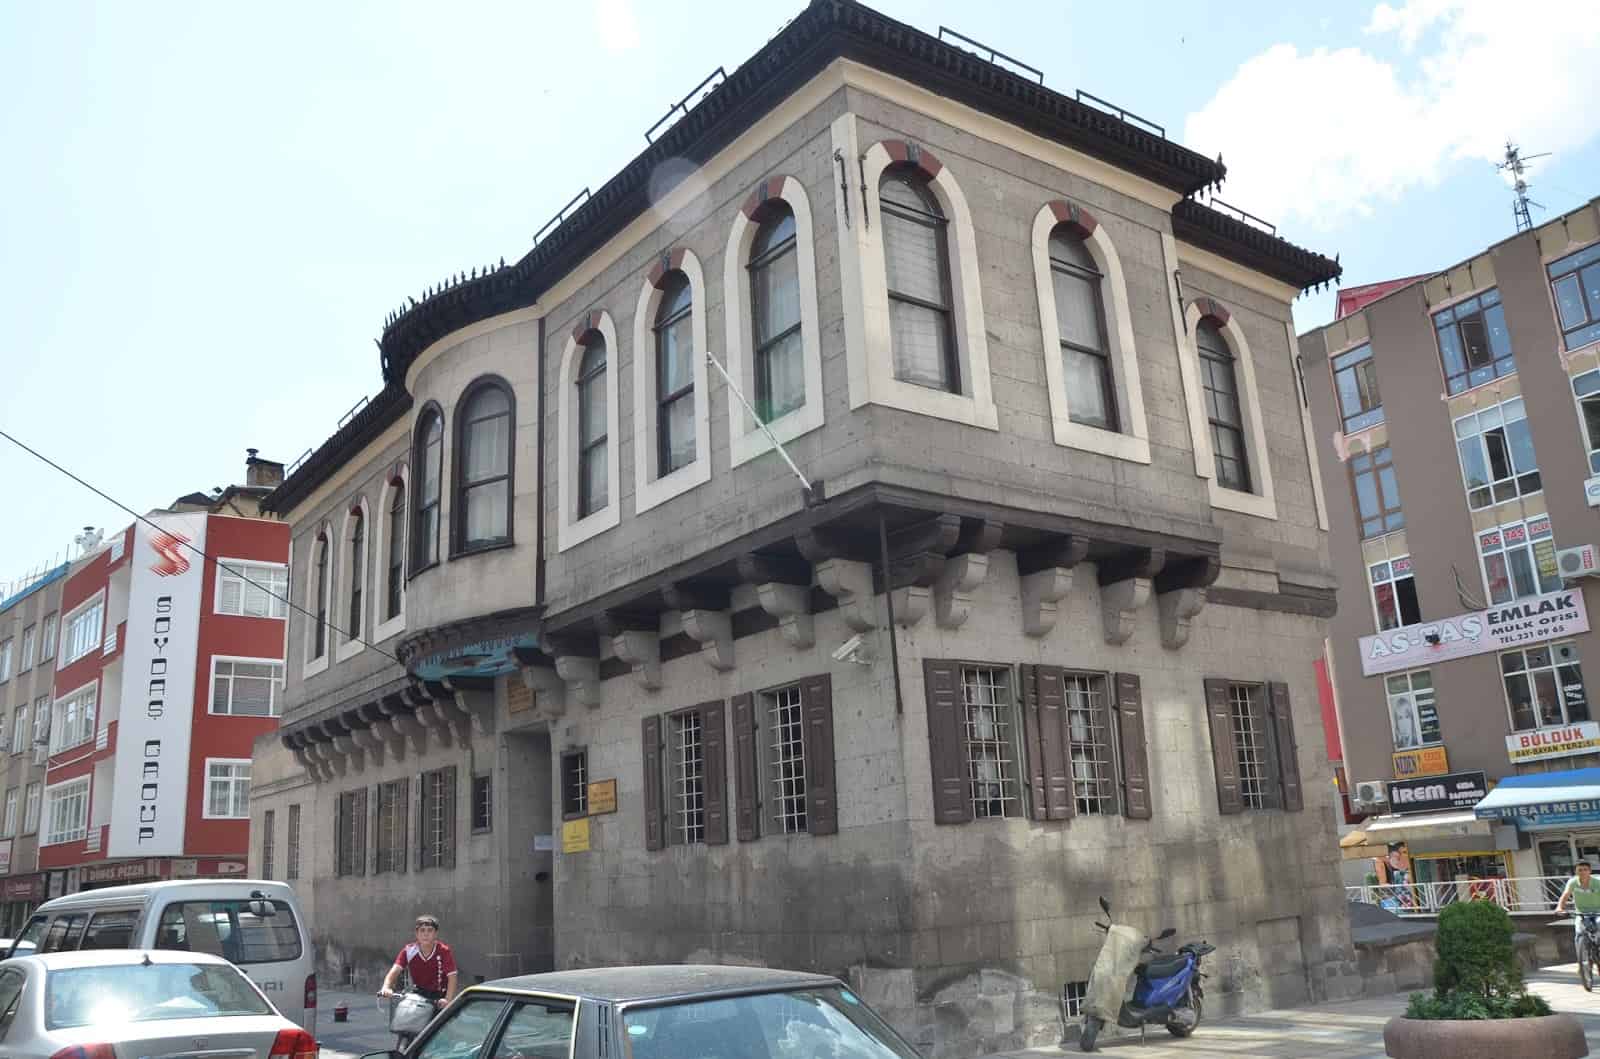 Atatürk House in Kayseri, Turkey